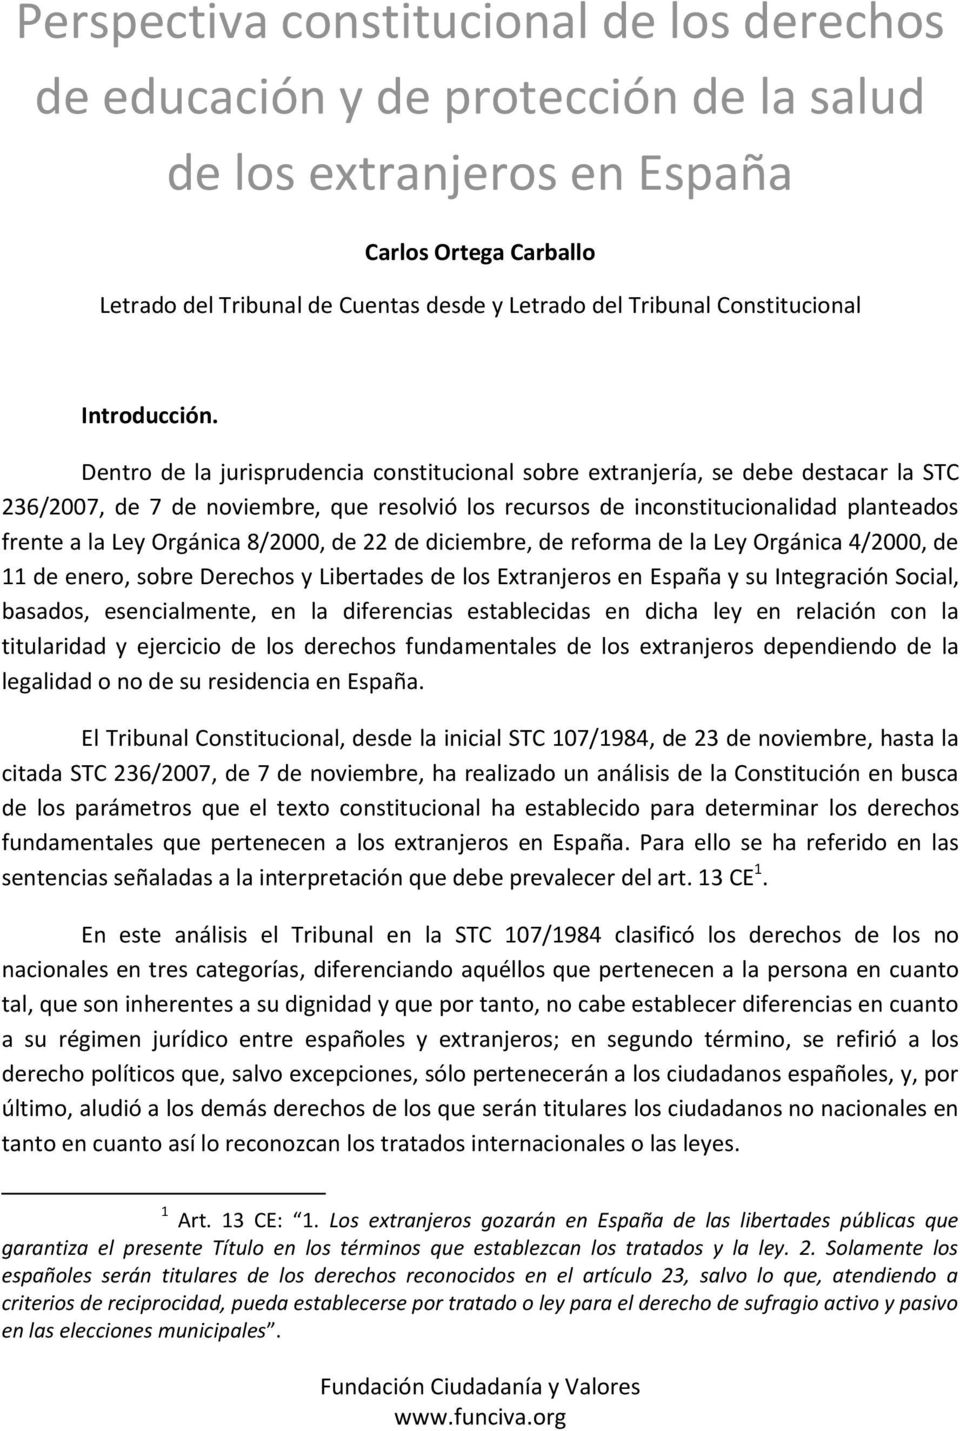 Dentro de la jurisprudencia constitucional sobre extranjería, se debe destacar la STC 236/2007, de 7 de noviembre, que resolvió los recursos de inconstitucionalidad planteados frente a la Ley